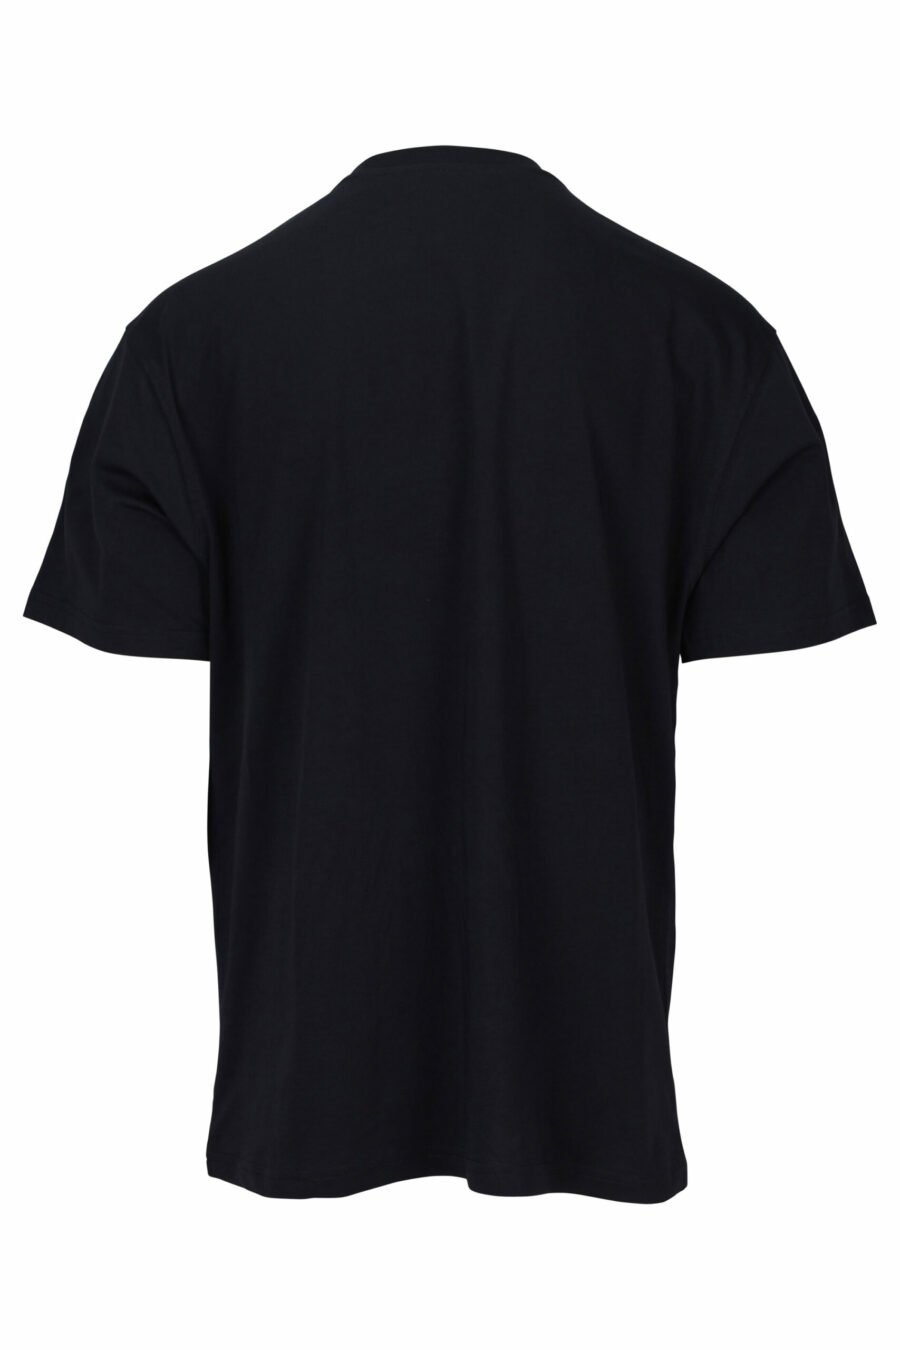 T-shirt noir avec maxilogo brodé avec détails orange - 889316957471 1 scaled